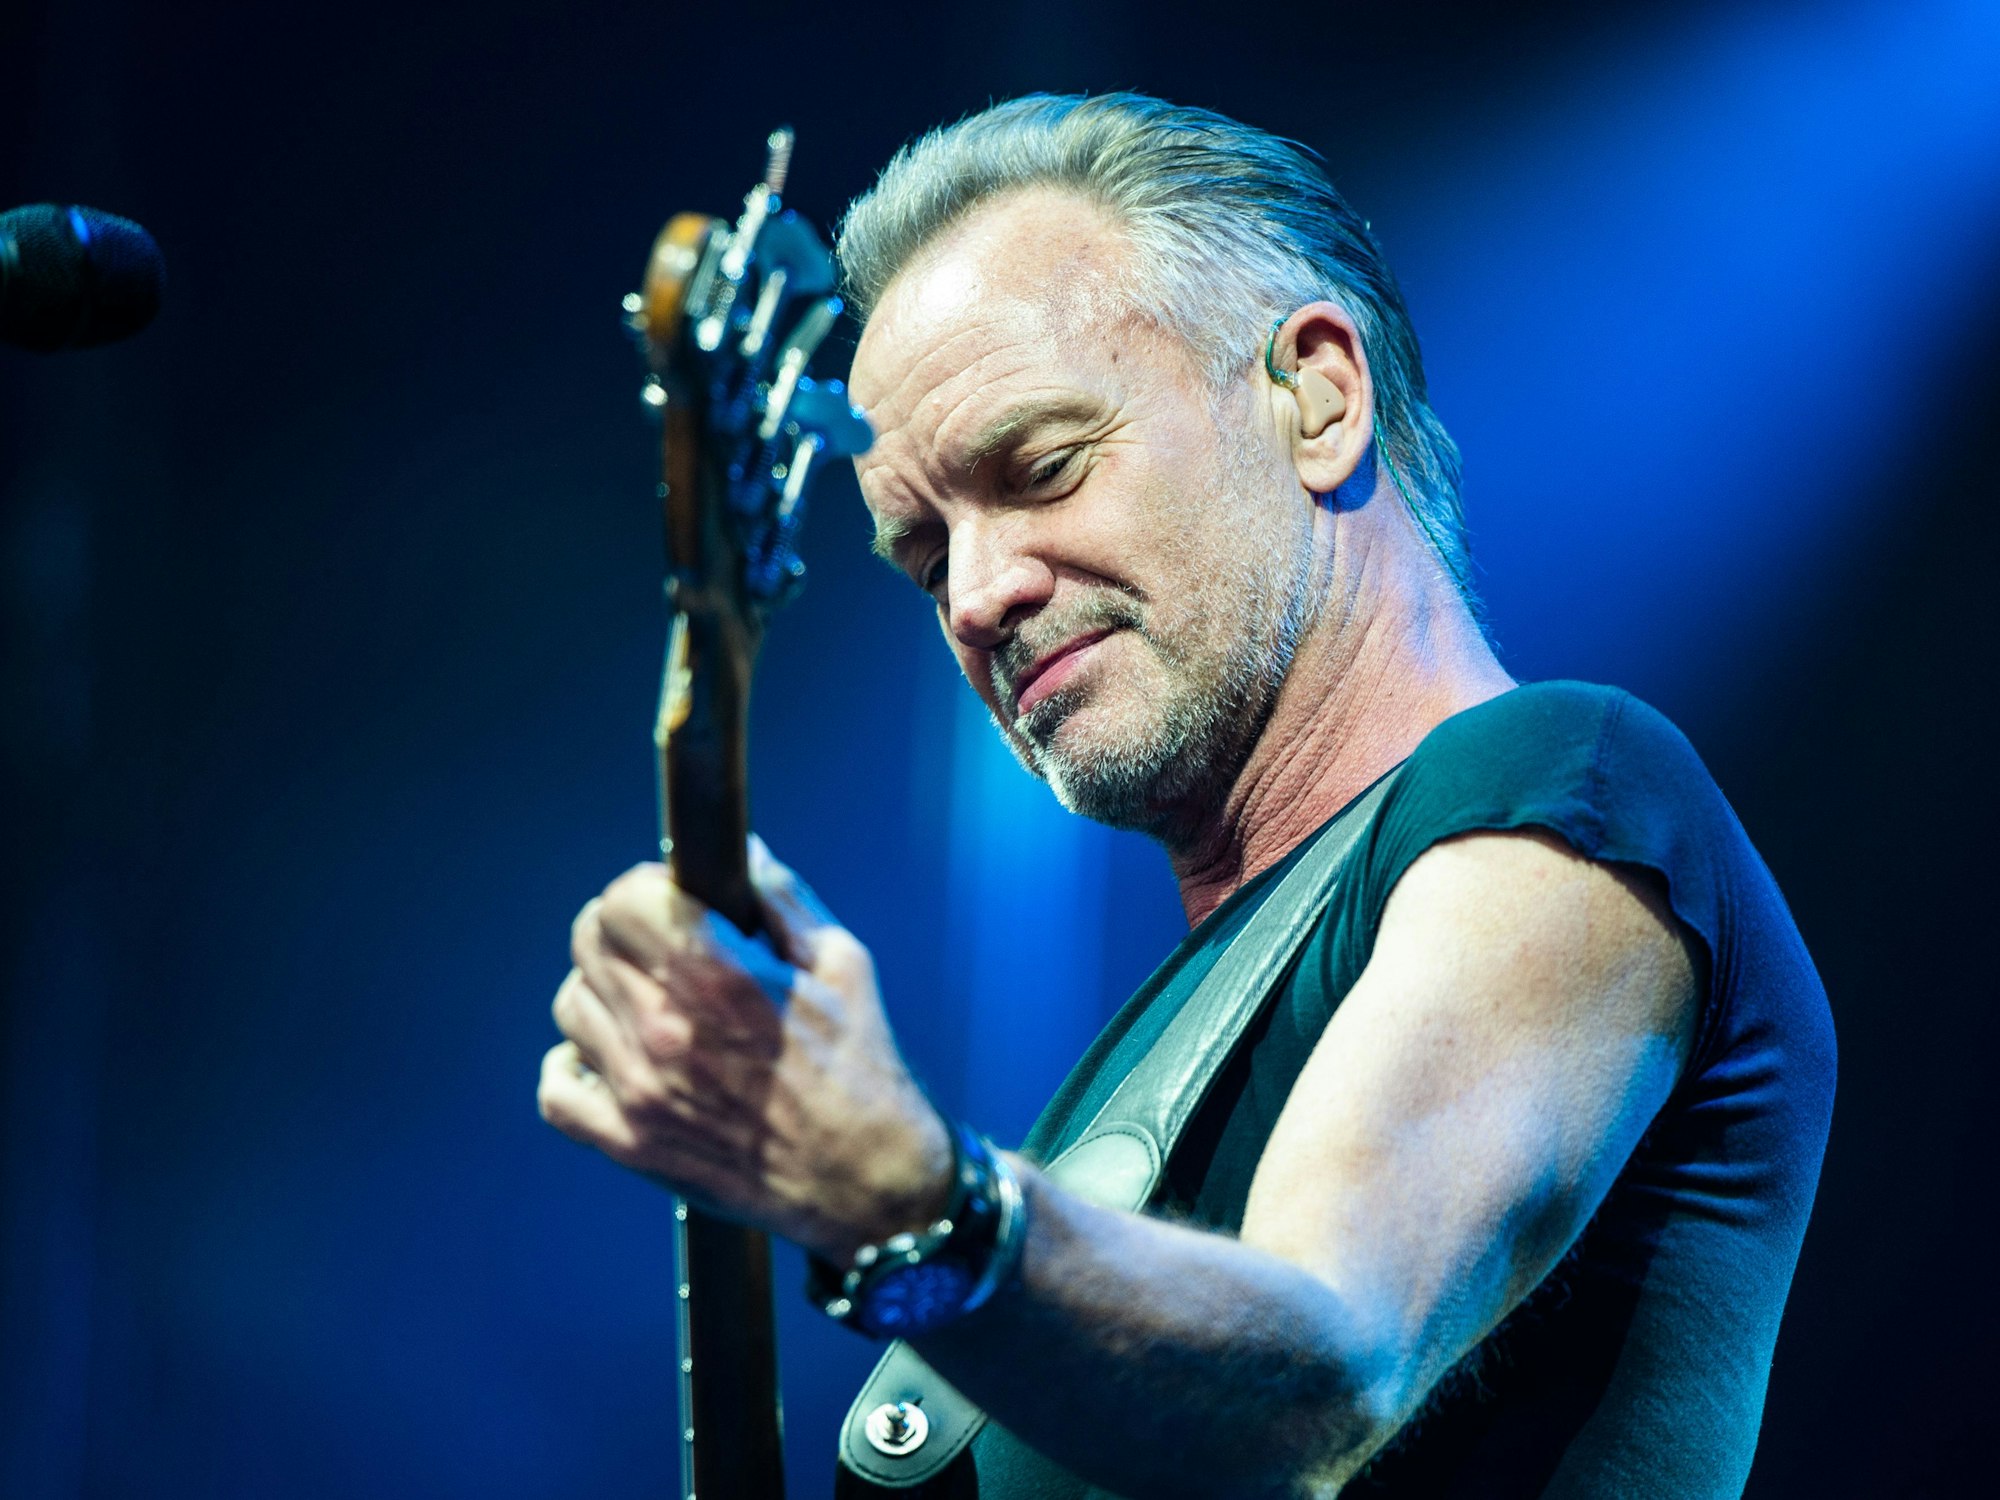 Der Sänger Sting schaut auf die Gitarre.